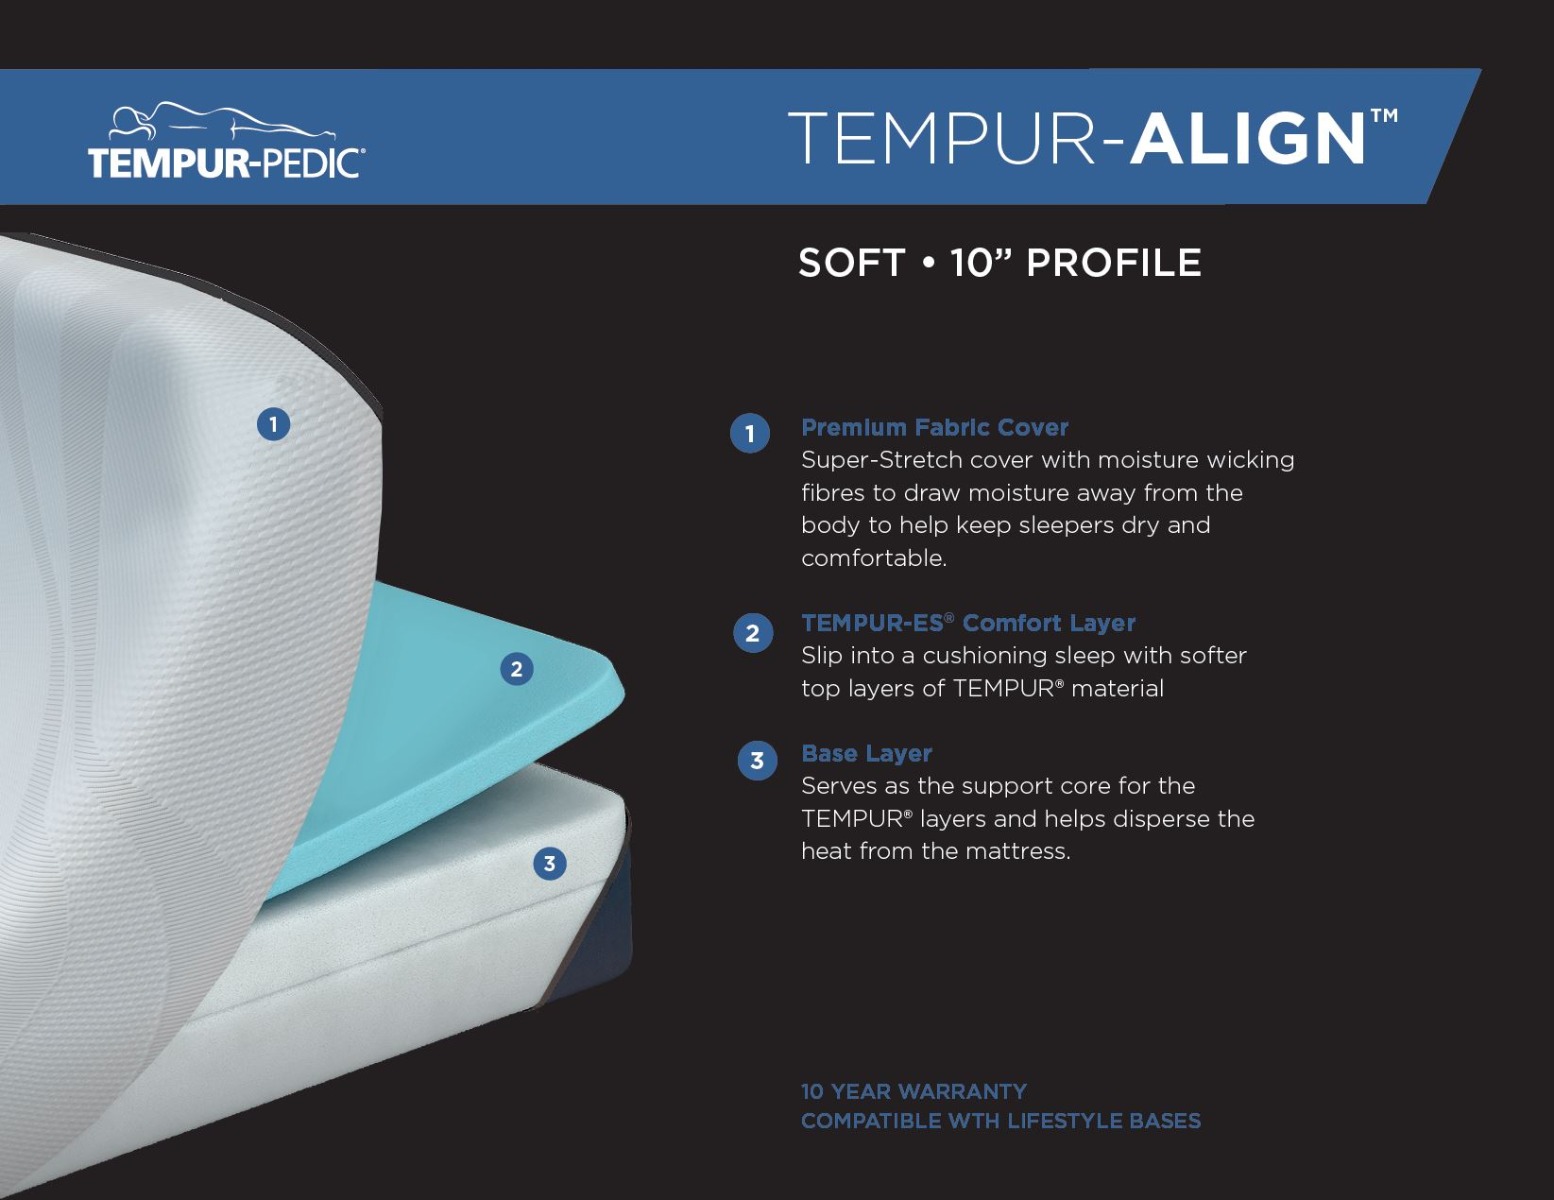 Tempur-pedic Tempur-Align Soft Memory Foam Mattress Details